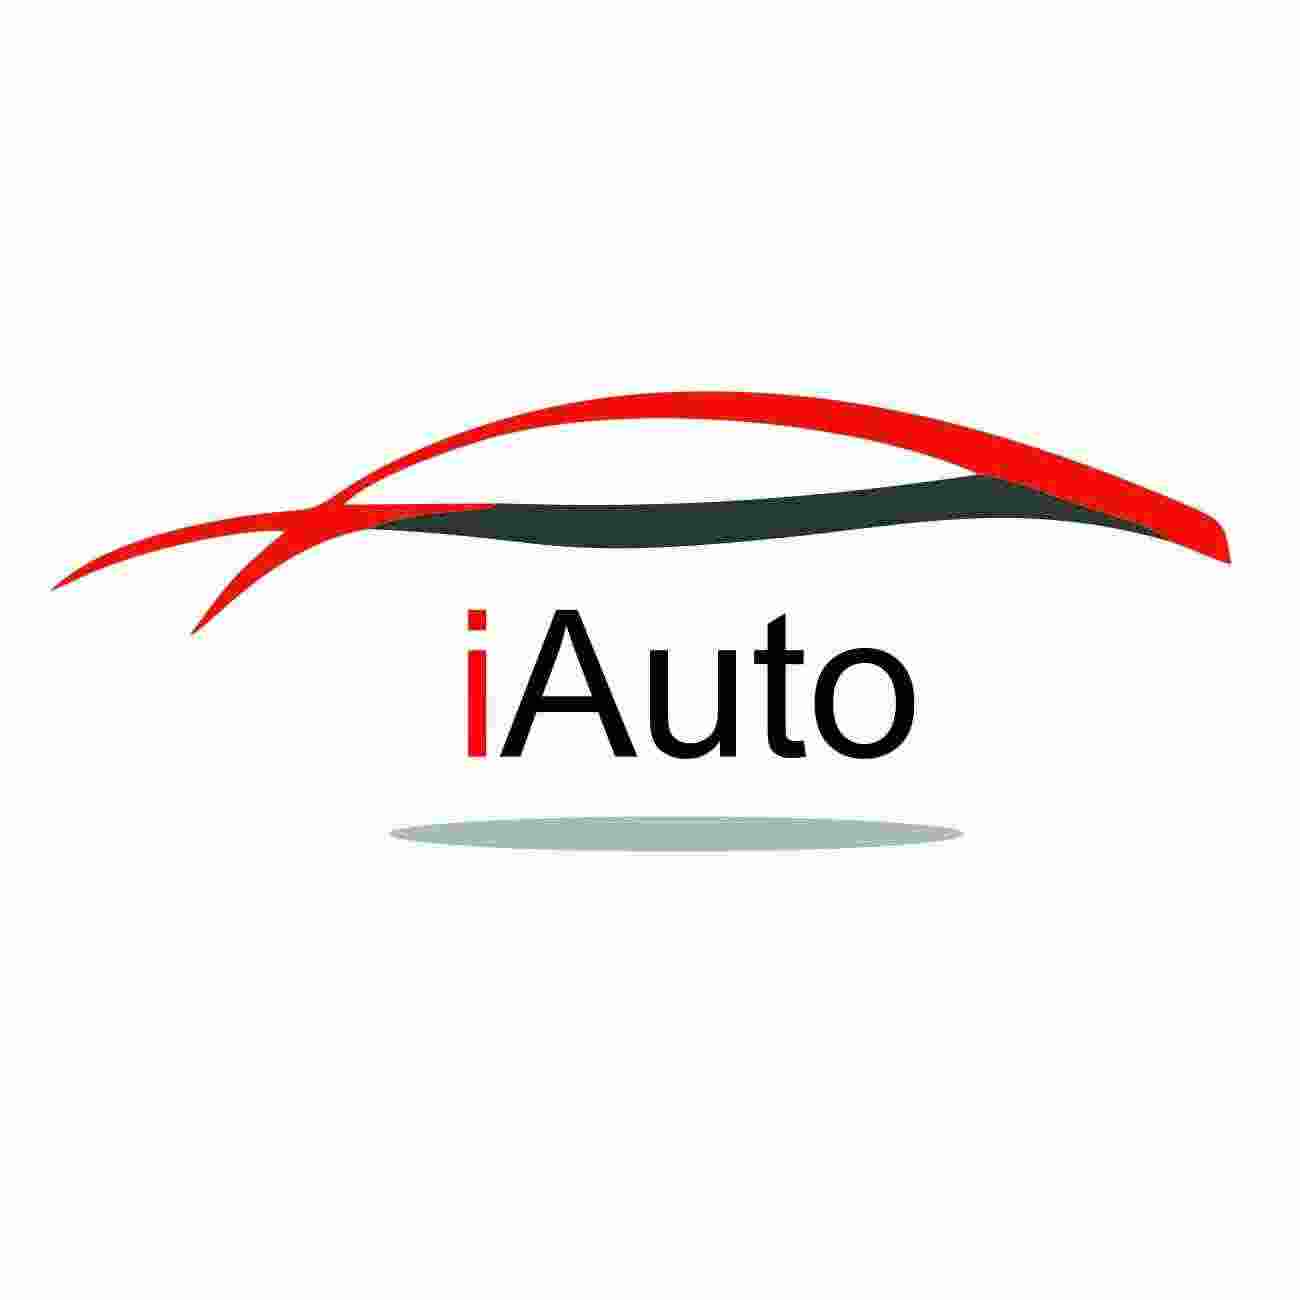 Логотип iAuto